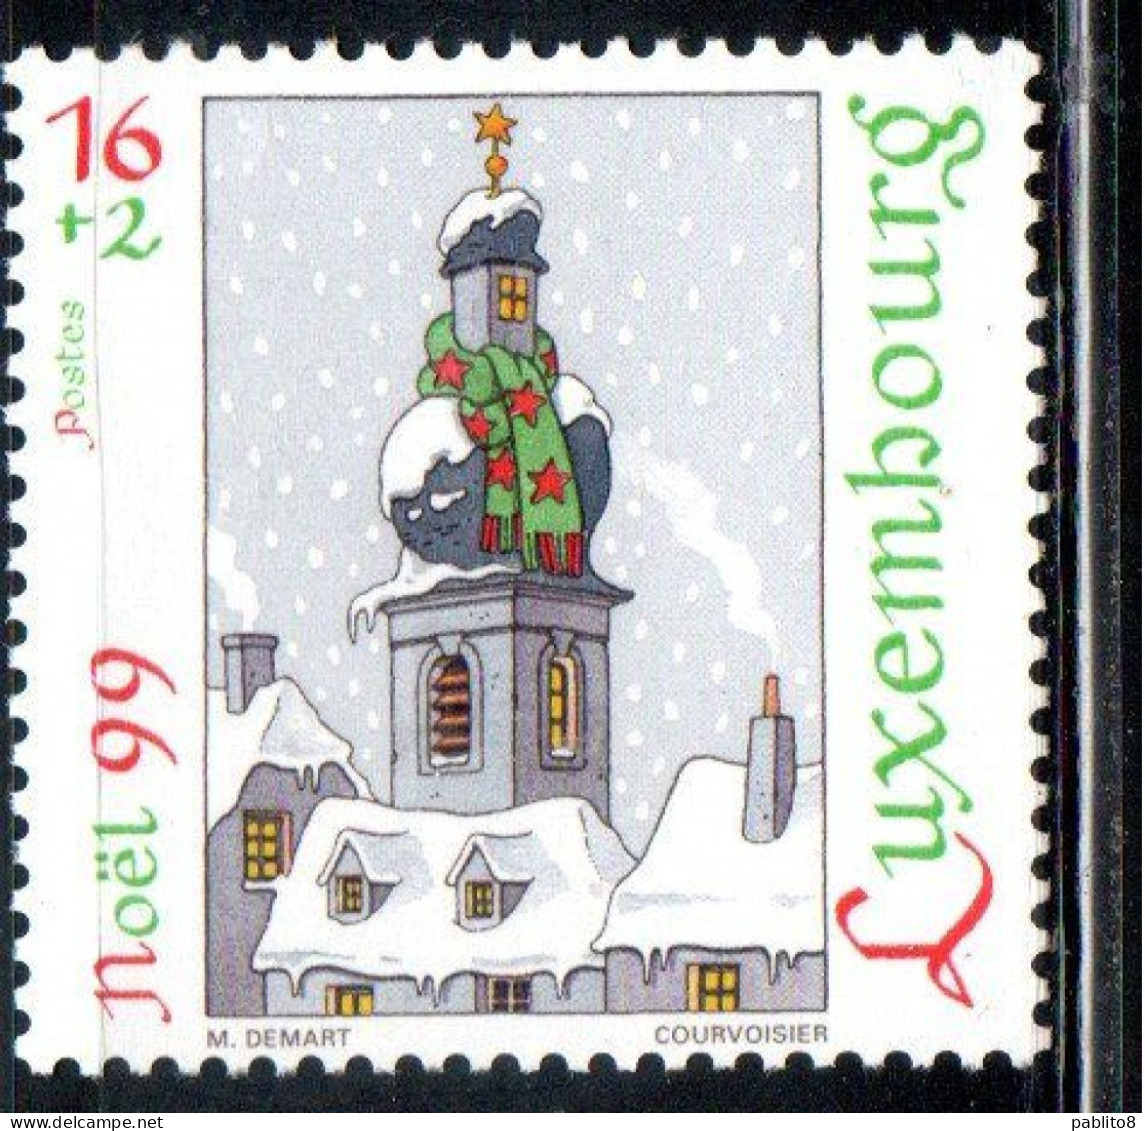 LUXEMBOURG LUSSEMBURGO 1999 CHRISTMAS NATALE NOEL WEIHNACHTEN NAVIDAD 16 +2 MNH - Nuevos